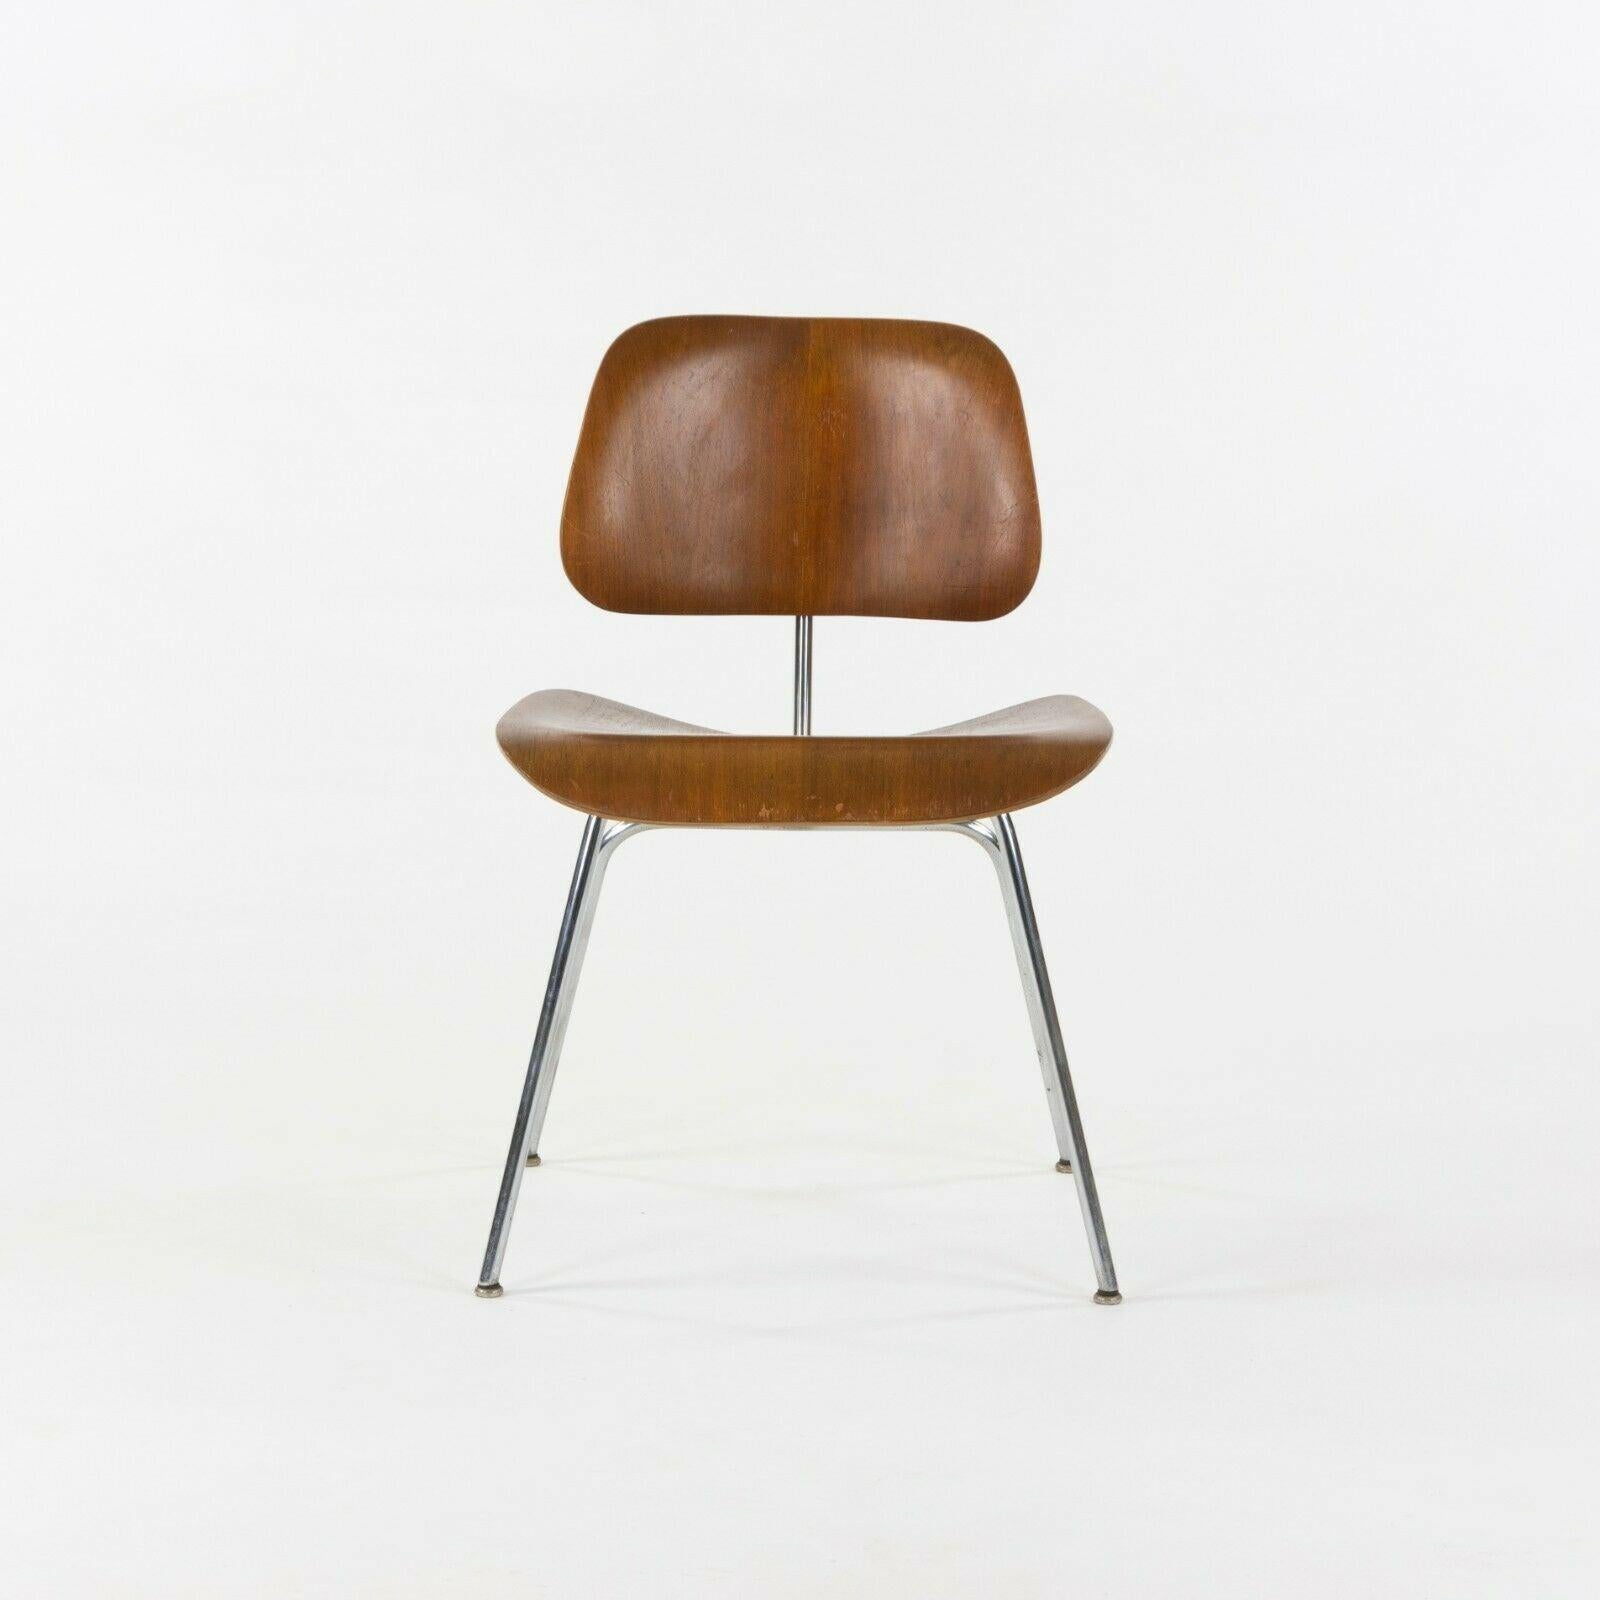 Zum Verkauf steht ein Original-Set von vier DCM-Stühlen, entworfen von Charles und Ray Eames. Dieses spezielle Set stammt aus dem Jahr 1948 und wurde von der Evans Plywood Company (dem ersten Hersteller dieser Stühle) produziert. Bemerkenswert ist